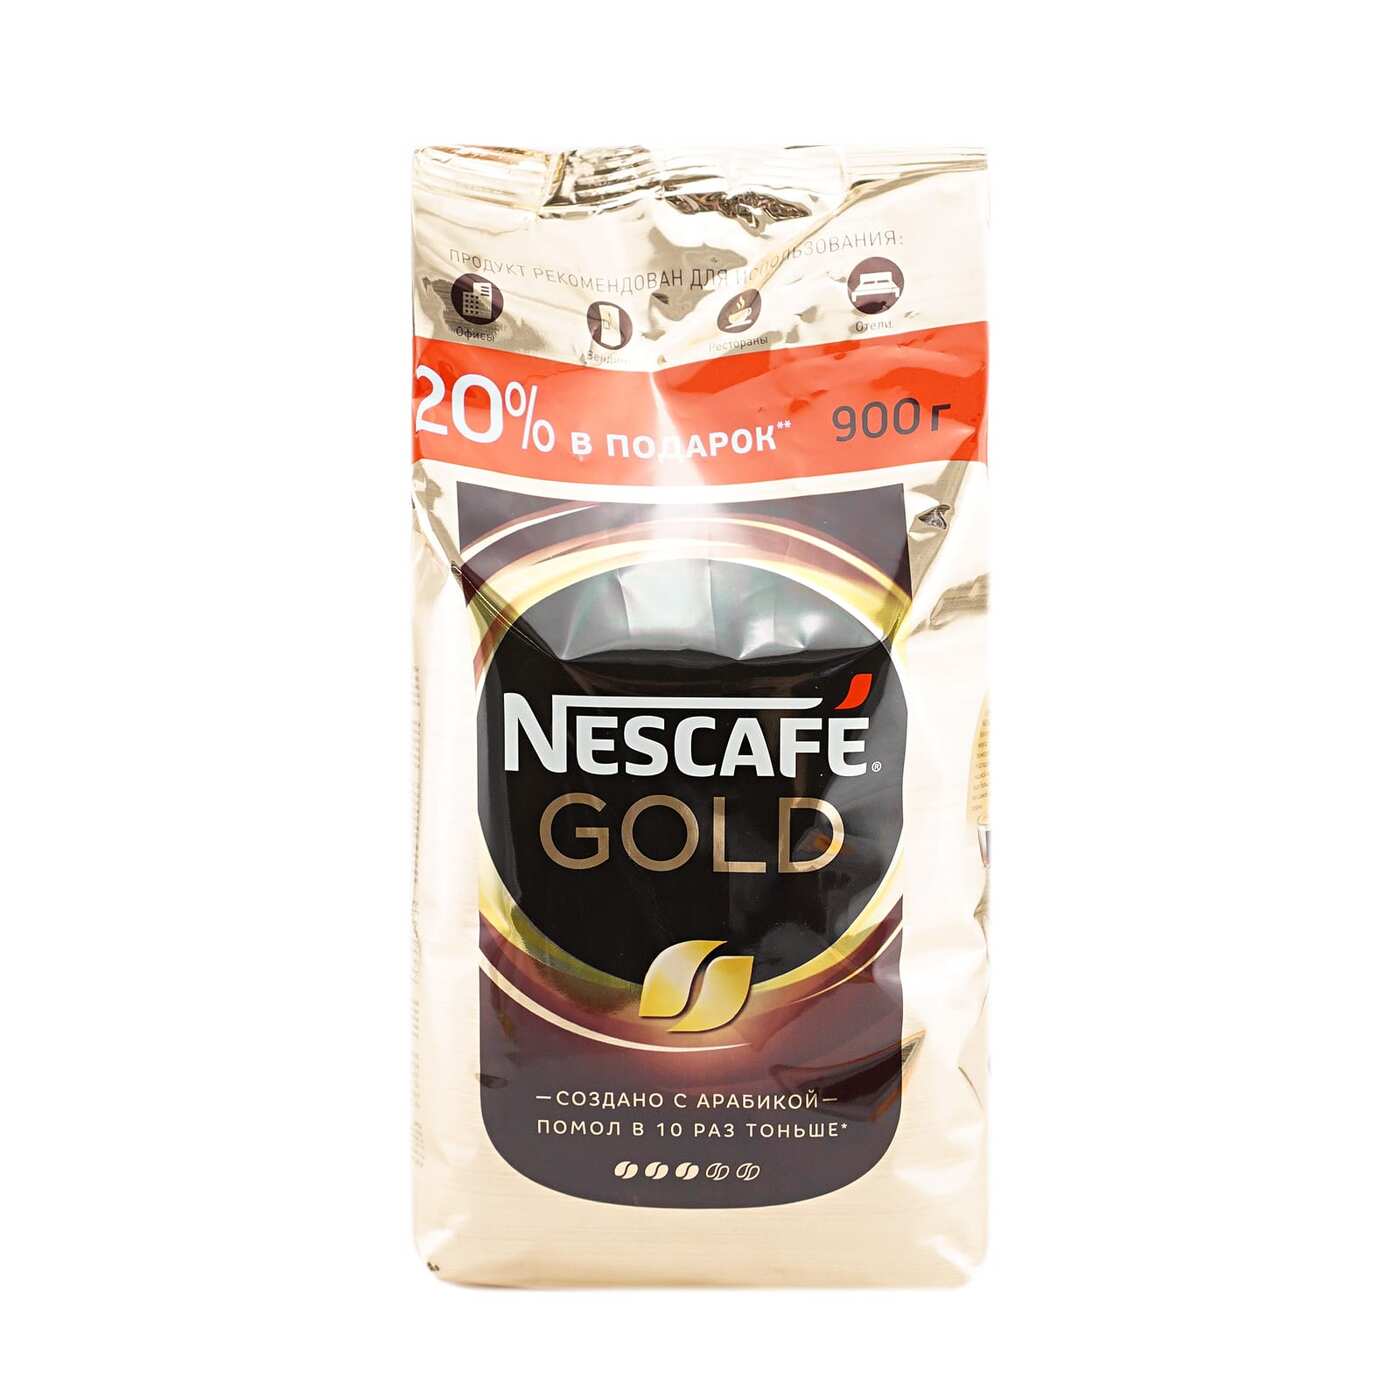 Кофе nescafe gold 900 г. Nescafe кофе Gold 900г.. Nescafe Gold 750г. Кофе Нескафе Голд 750г. Кофе растворимый Nescafe Gold натуральный сублимированный, 900г.